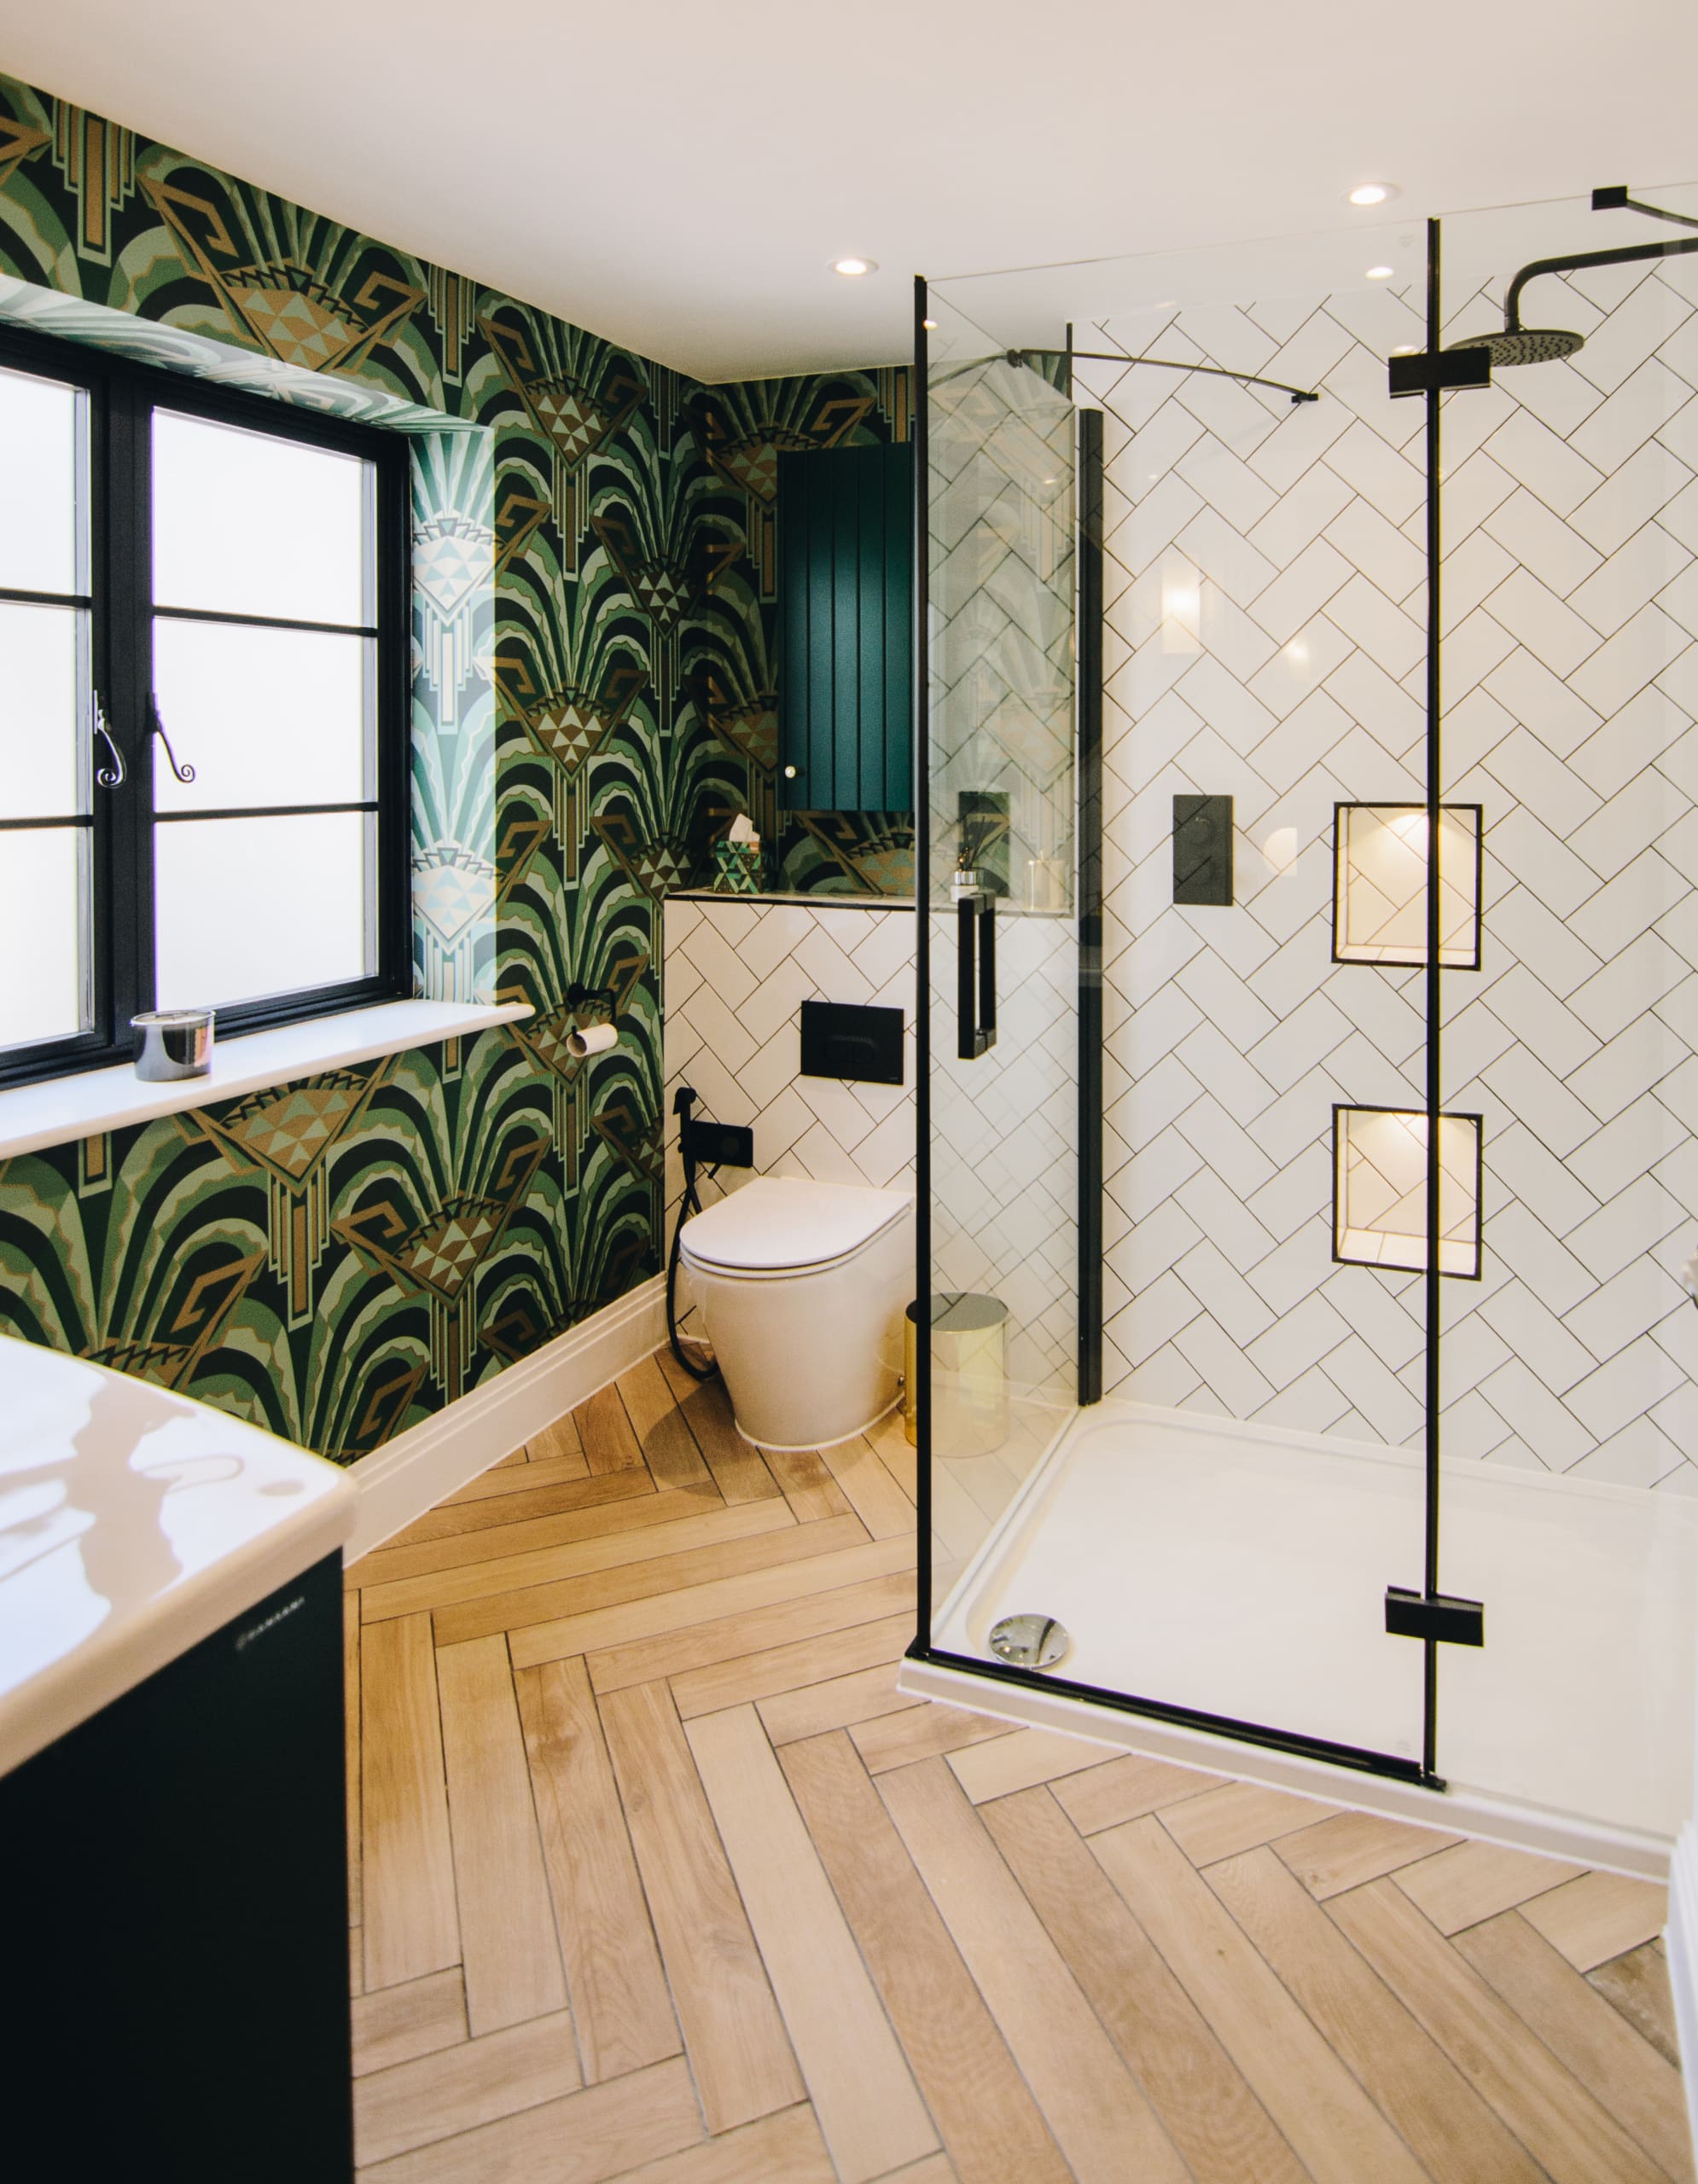 Art deco style bathroom with herringbone wooden floor.